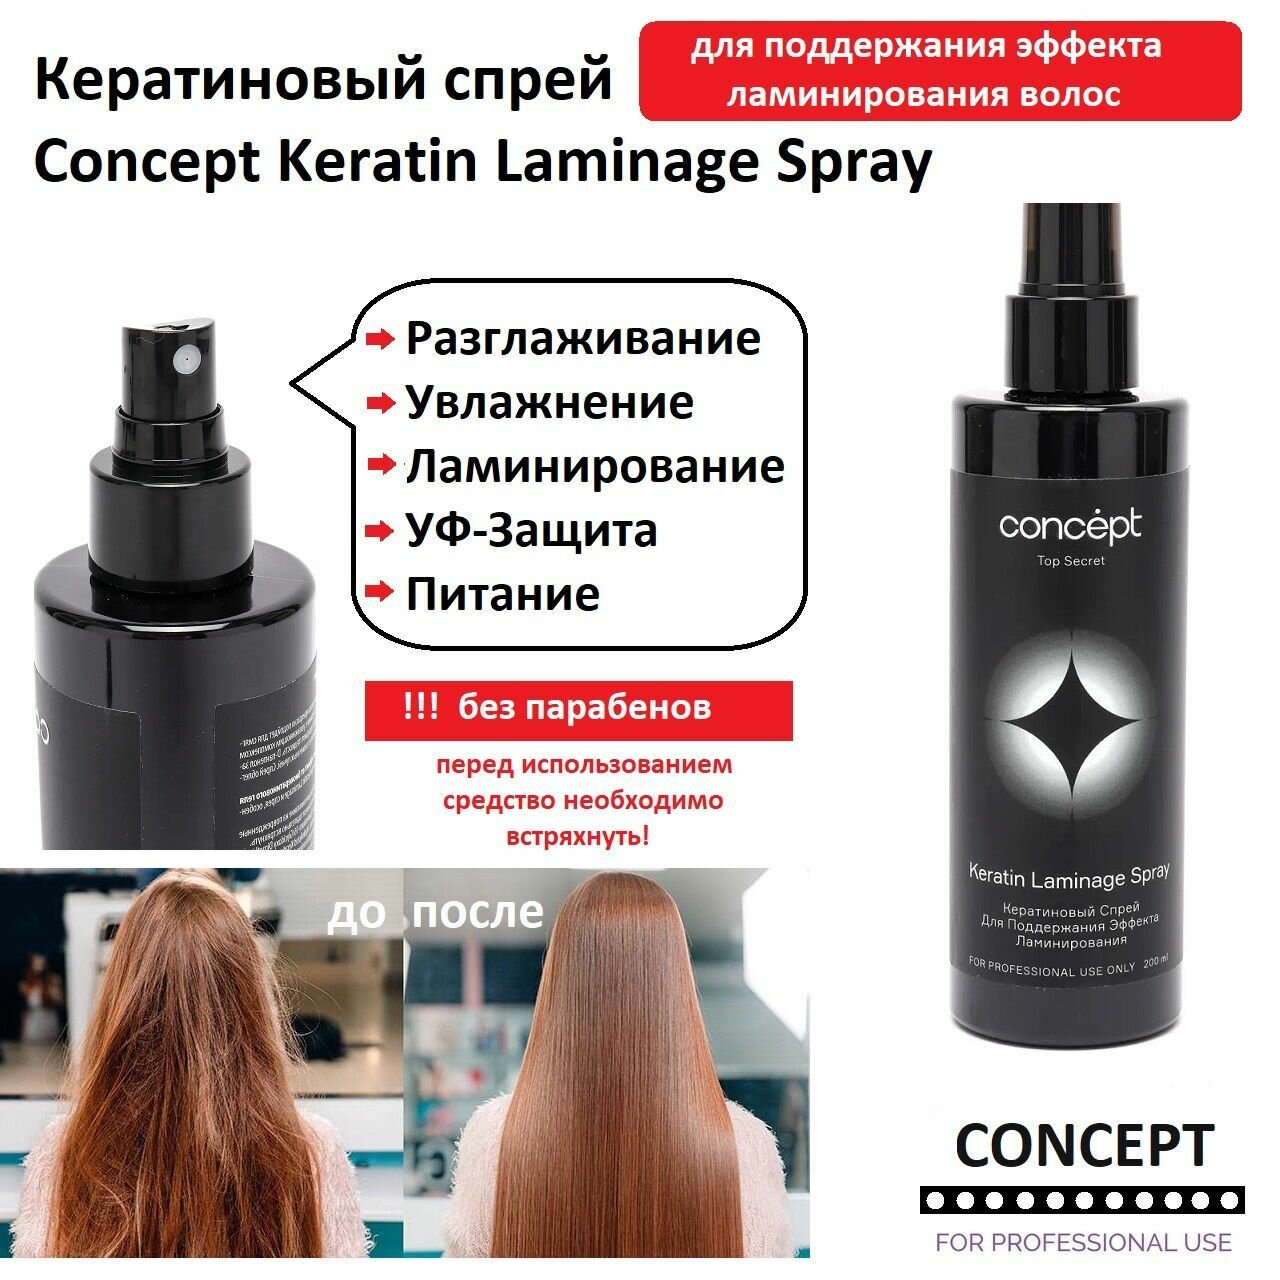 Кератиновый спрей Concept Keratin Laminage Spray, для поддержания эффекта ламинирования и экранирования волос, 200 мл